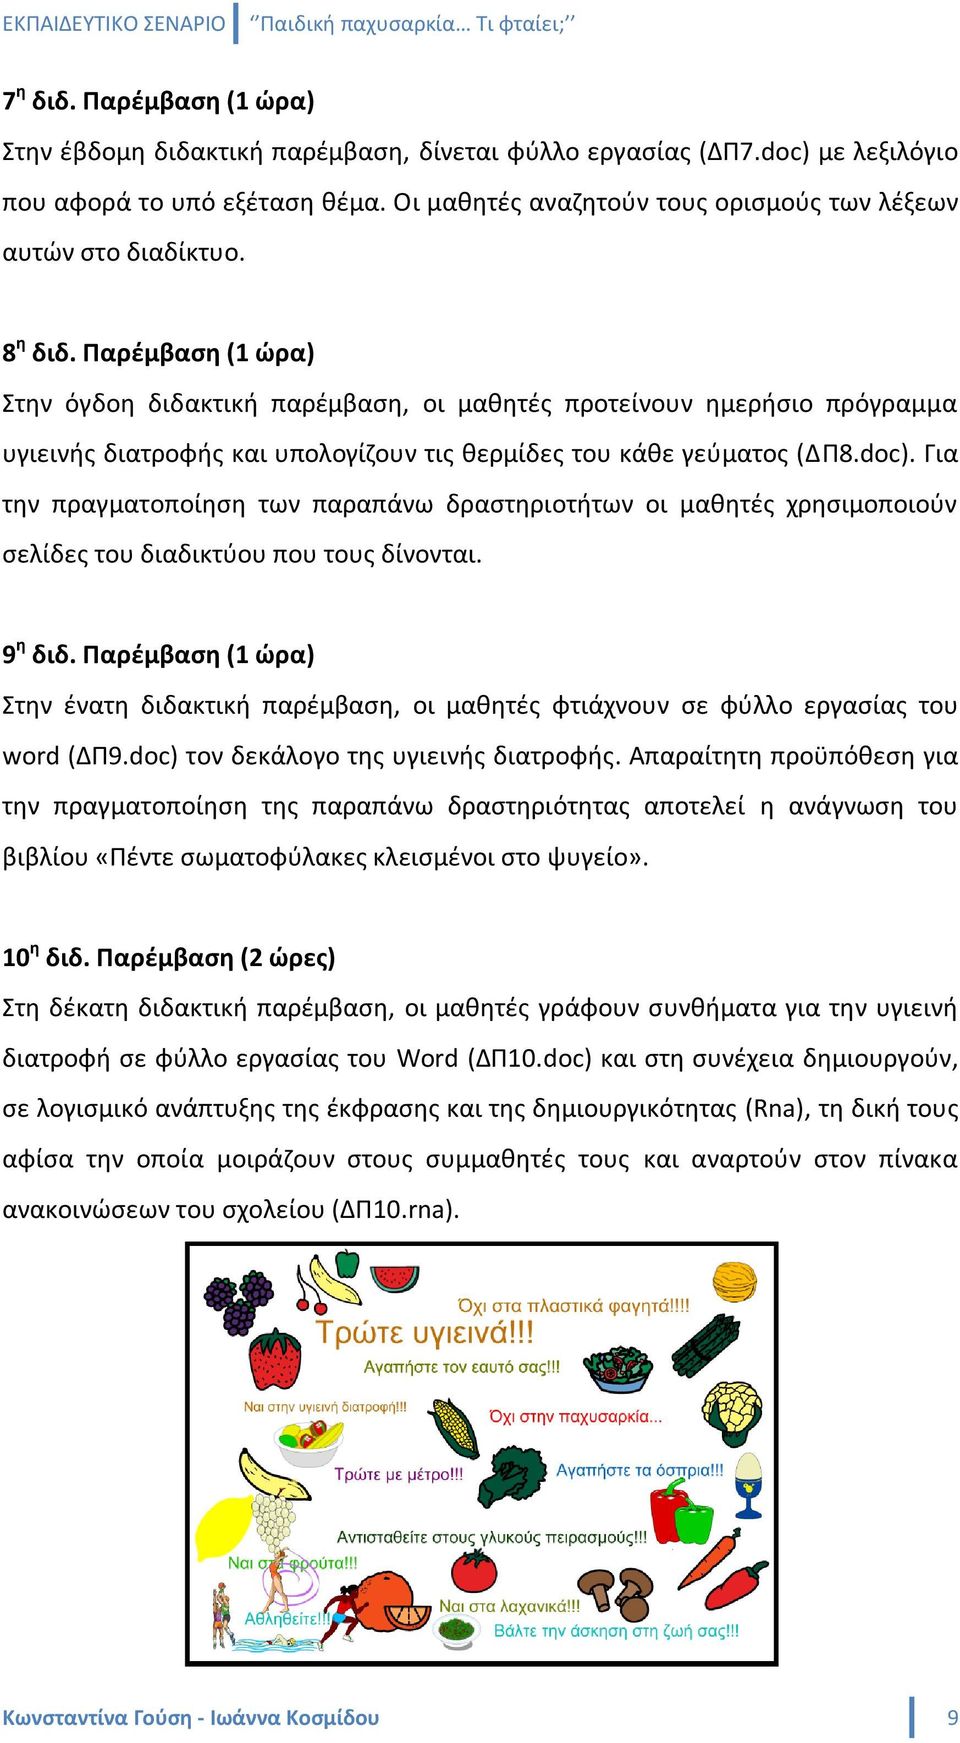 Παρζμβαςθ (1 ϊρα) τθν όγδοθ διδακτικι παρζμβαςθ, οι μακθτζσ προτείνουν θμεριςιο πρόγραμμα υγιεινισ διατροφισ και υπολογίηουν τισ κερμίδεσ του κάκε γεφματοσ (ΔΠ8.doc).